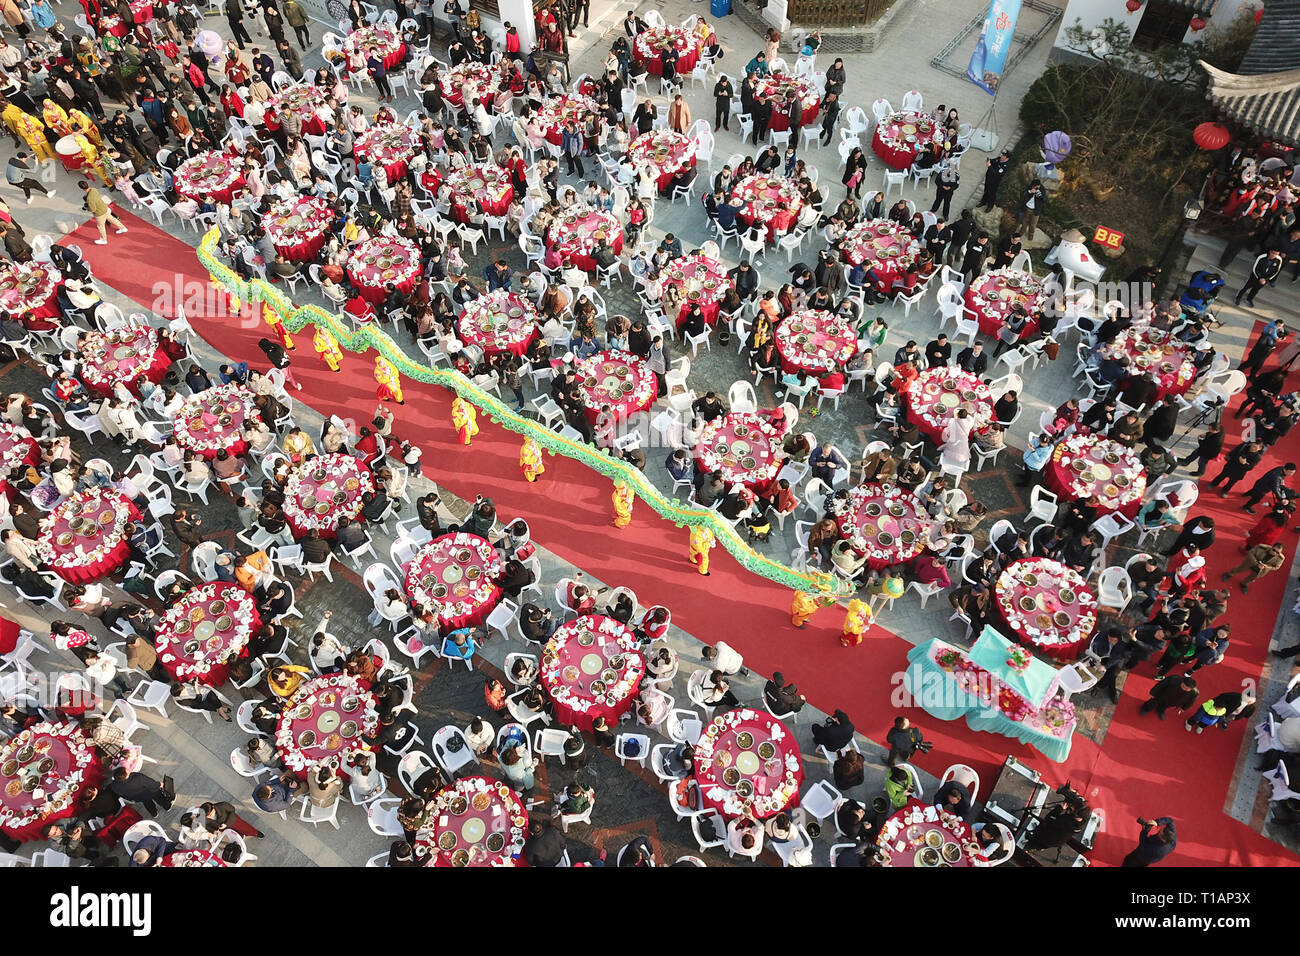 Pechino, Cina. 23 Mar, 2019. Foto aerea adottate il 23 marzo 2019 mostra la gente che ottiene insieme per degustare i piatti fatti di Luosi, una sorta di fiume lumaca, durante una festa che si tiene in città Jiangba Hongze del distretto di Huai'an City, est cinese della provincia di Jiangsu. Piatti di Luosi sono solitamente venduti presso bancarelle in Cina. Credit: Wan Zhen/Xinhua/Alamy Live News Foto Stock